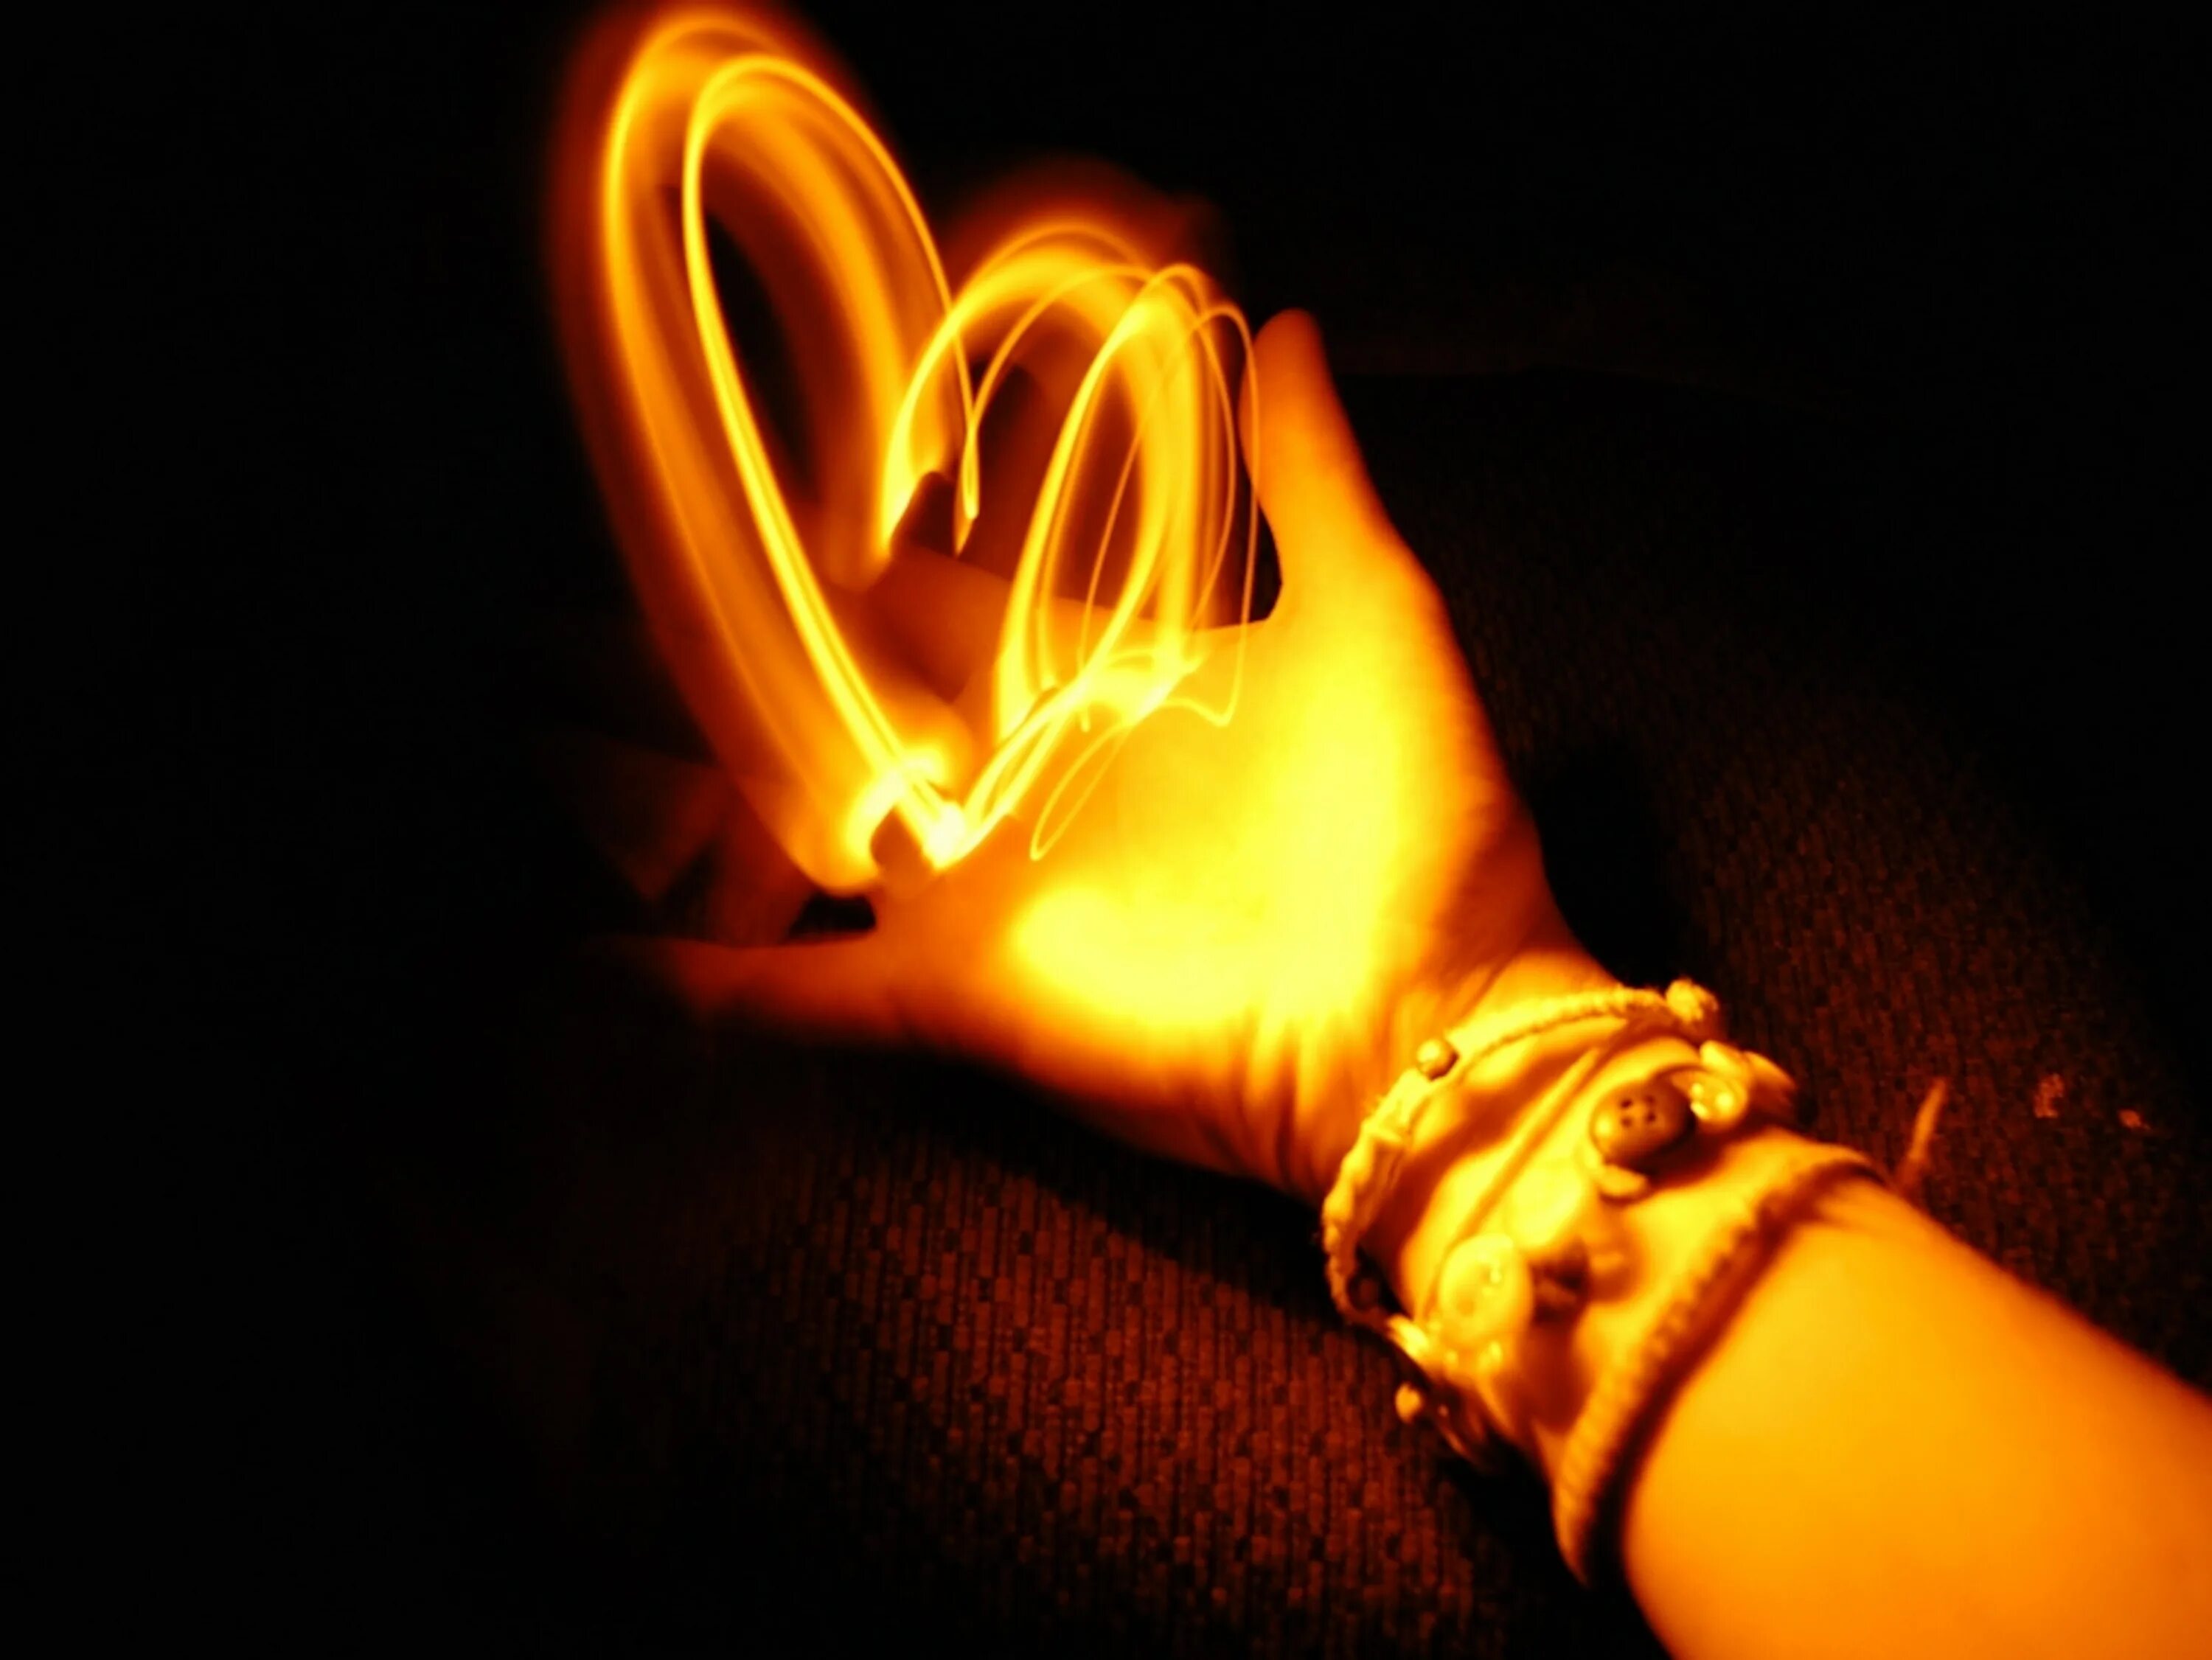 Сердце в лучах света. Огненное сердце. Сердце светится. Горящее сердце. Огонек в ладони.